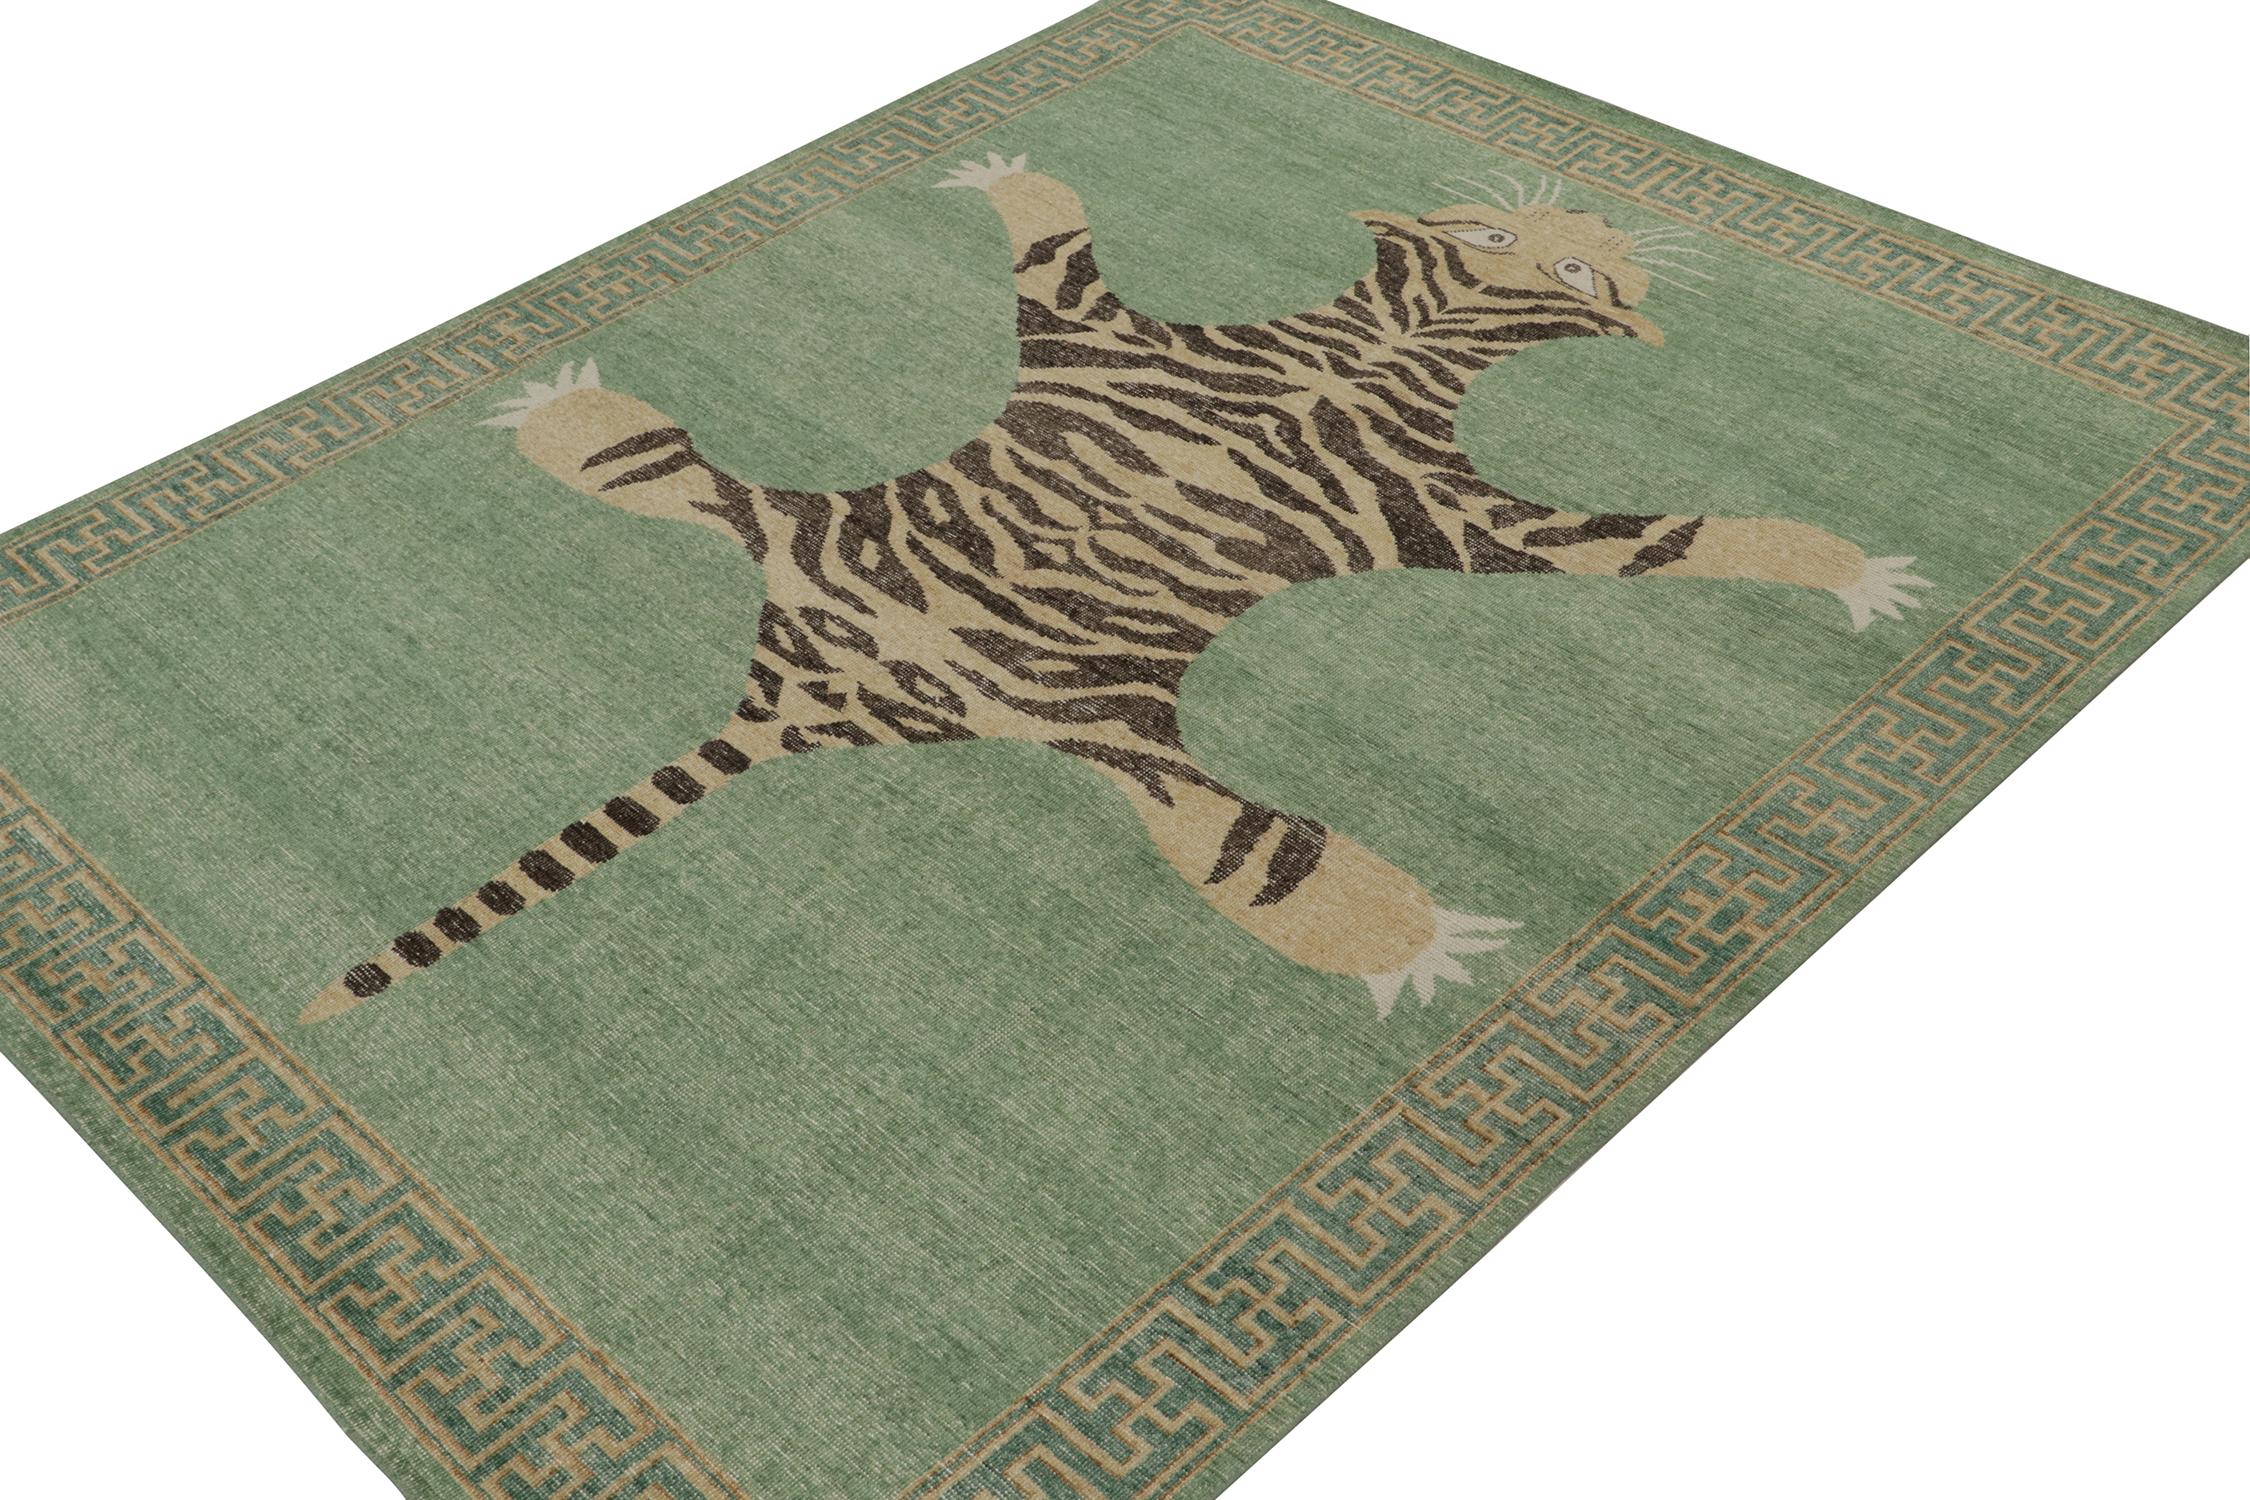 Ce tapis 8x10 est un nouvel ajout à la collection Homage de Rug & Kilim, qui reprend le design traditionnel des tapis en peau de tigre.

Plus loin sur le Design : 

Cette pièce est inspirée des anciens tapis indiens en peau de tigre, d'une